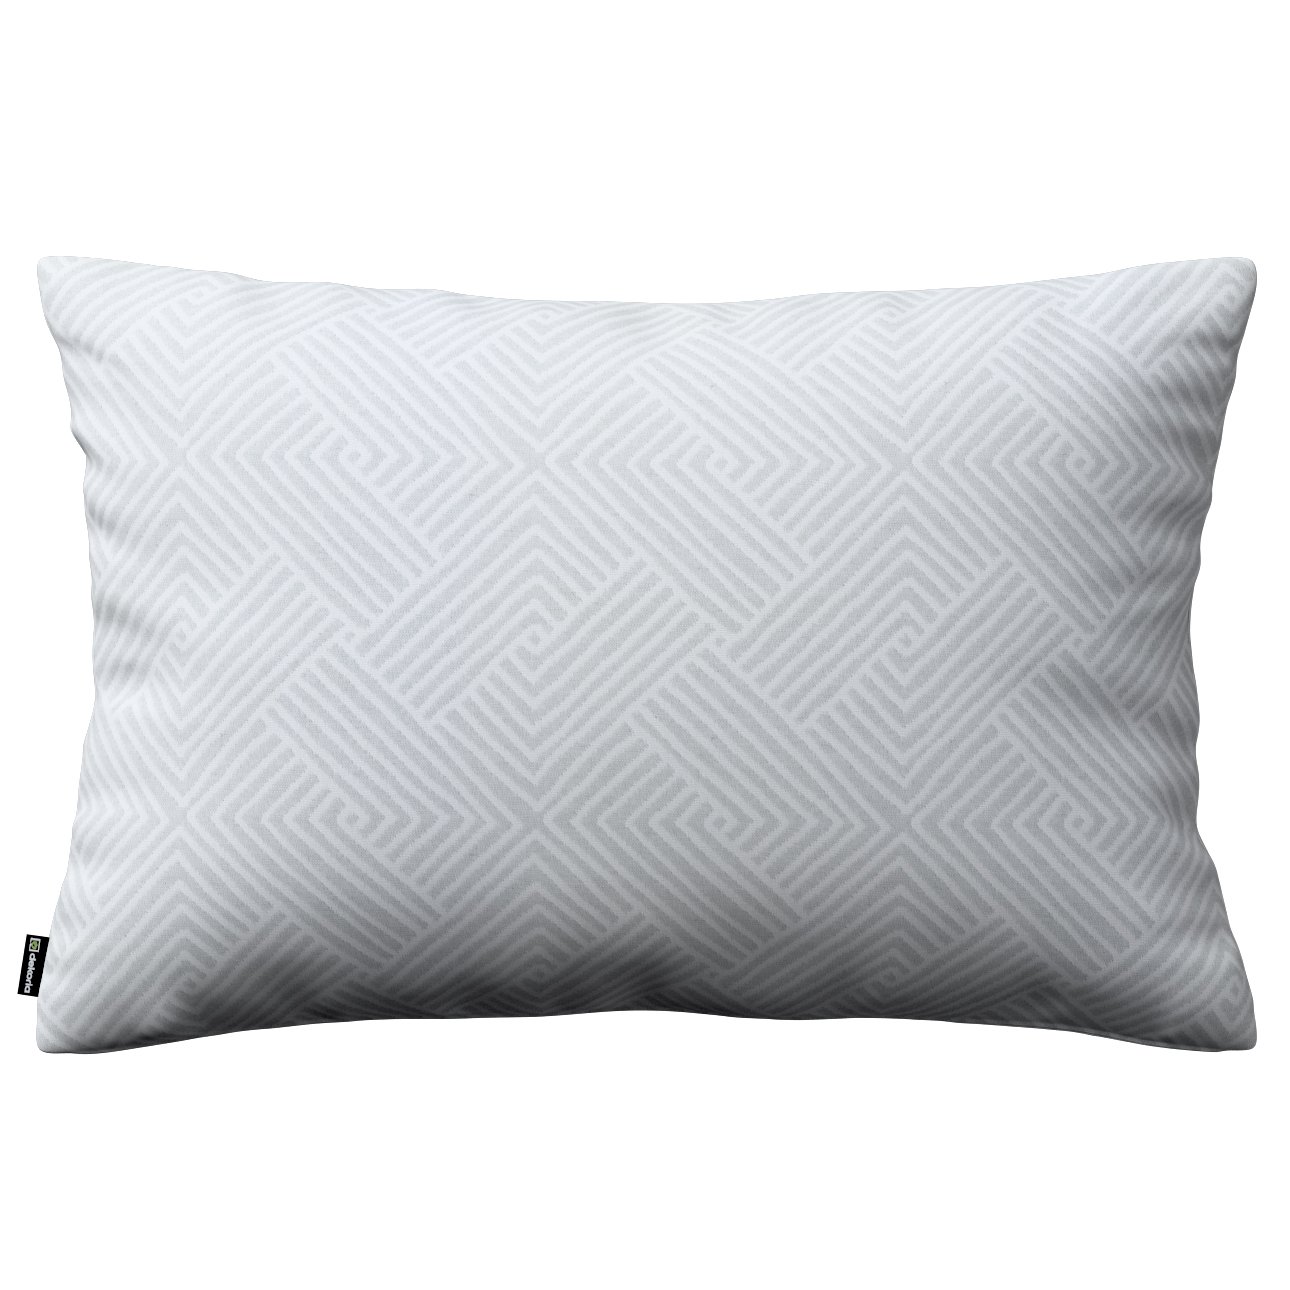 Dekoria Karin - jednoduchá obliečka, 60x40cm, sivo-biele geometrické vzory, 60 x 40 cm, Sunny, 143-43